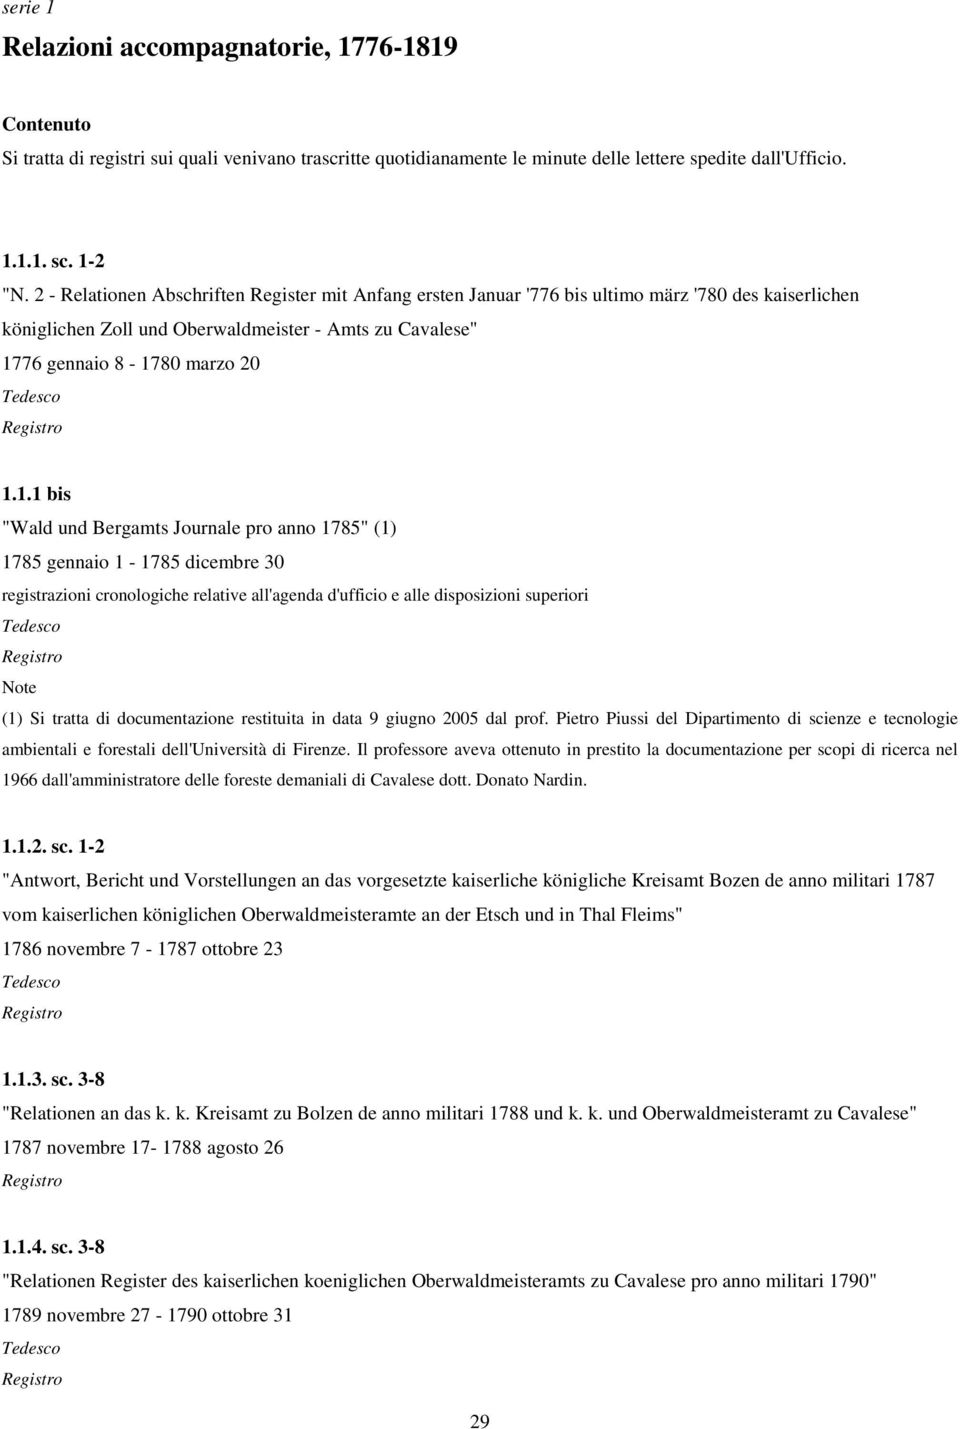 1.1 bis "Wald und Bergamts Journale pro anno 1785" (1) 1785 gennaio 1-1785 dicembre 30 registrazioni cronologiche relative all'agenda d'ufficio e alle disposizioni superiori Tedesco Note (1) Si